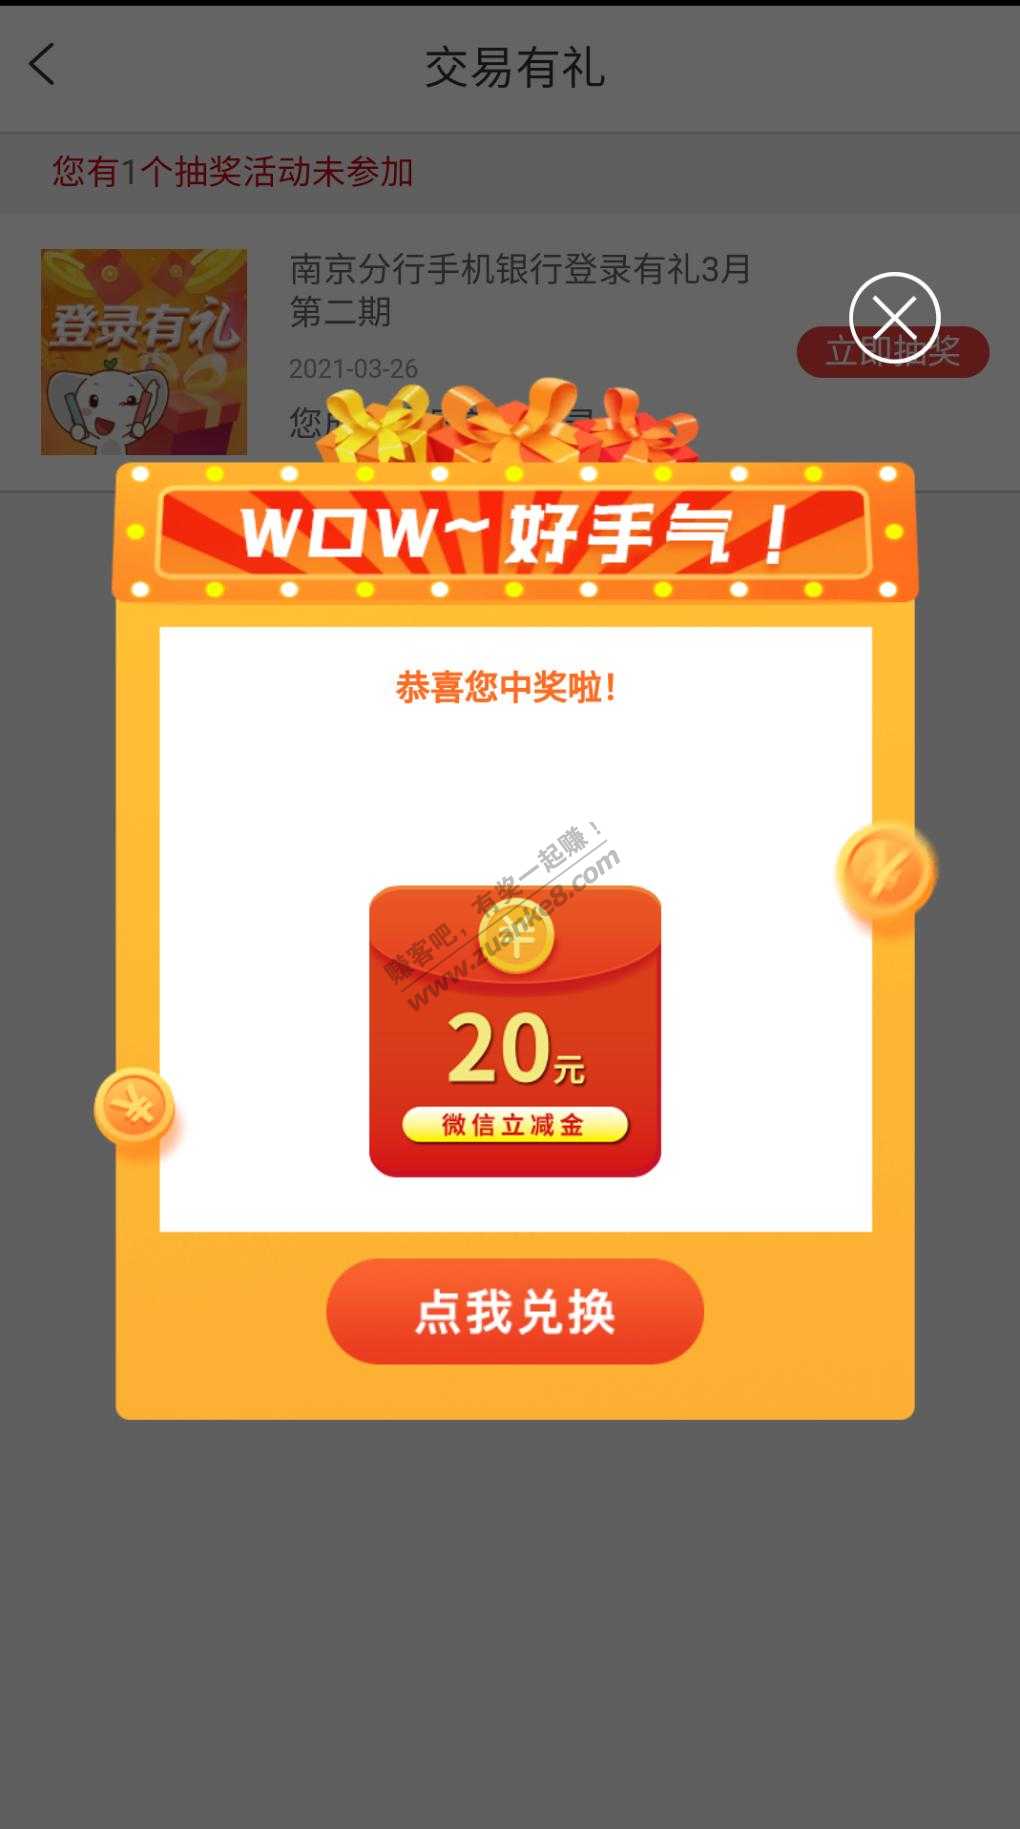 20微信立减金-南京工行app-活动大厅登录有礼-惠小助(52huixz.com)